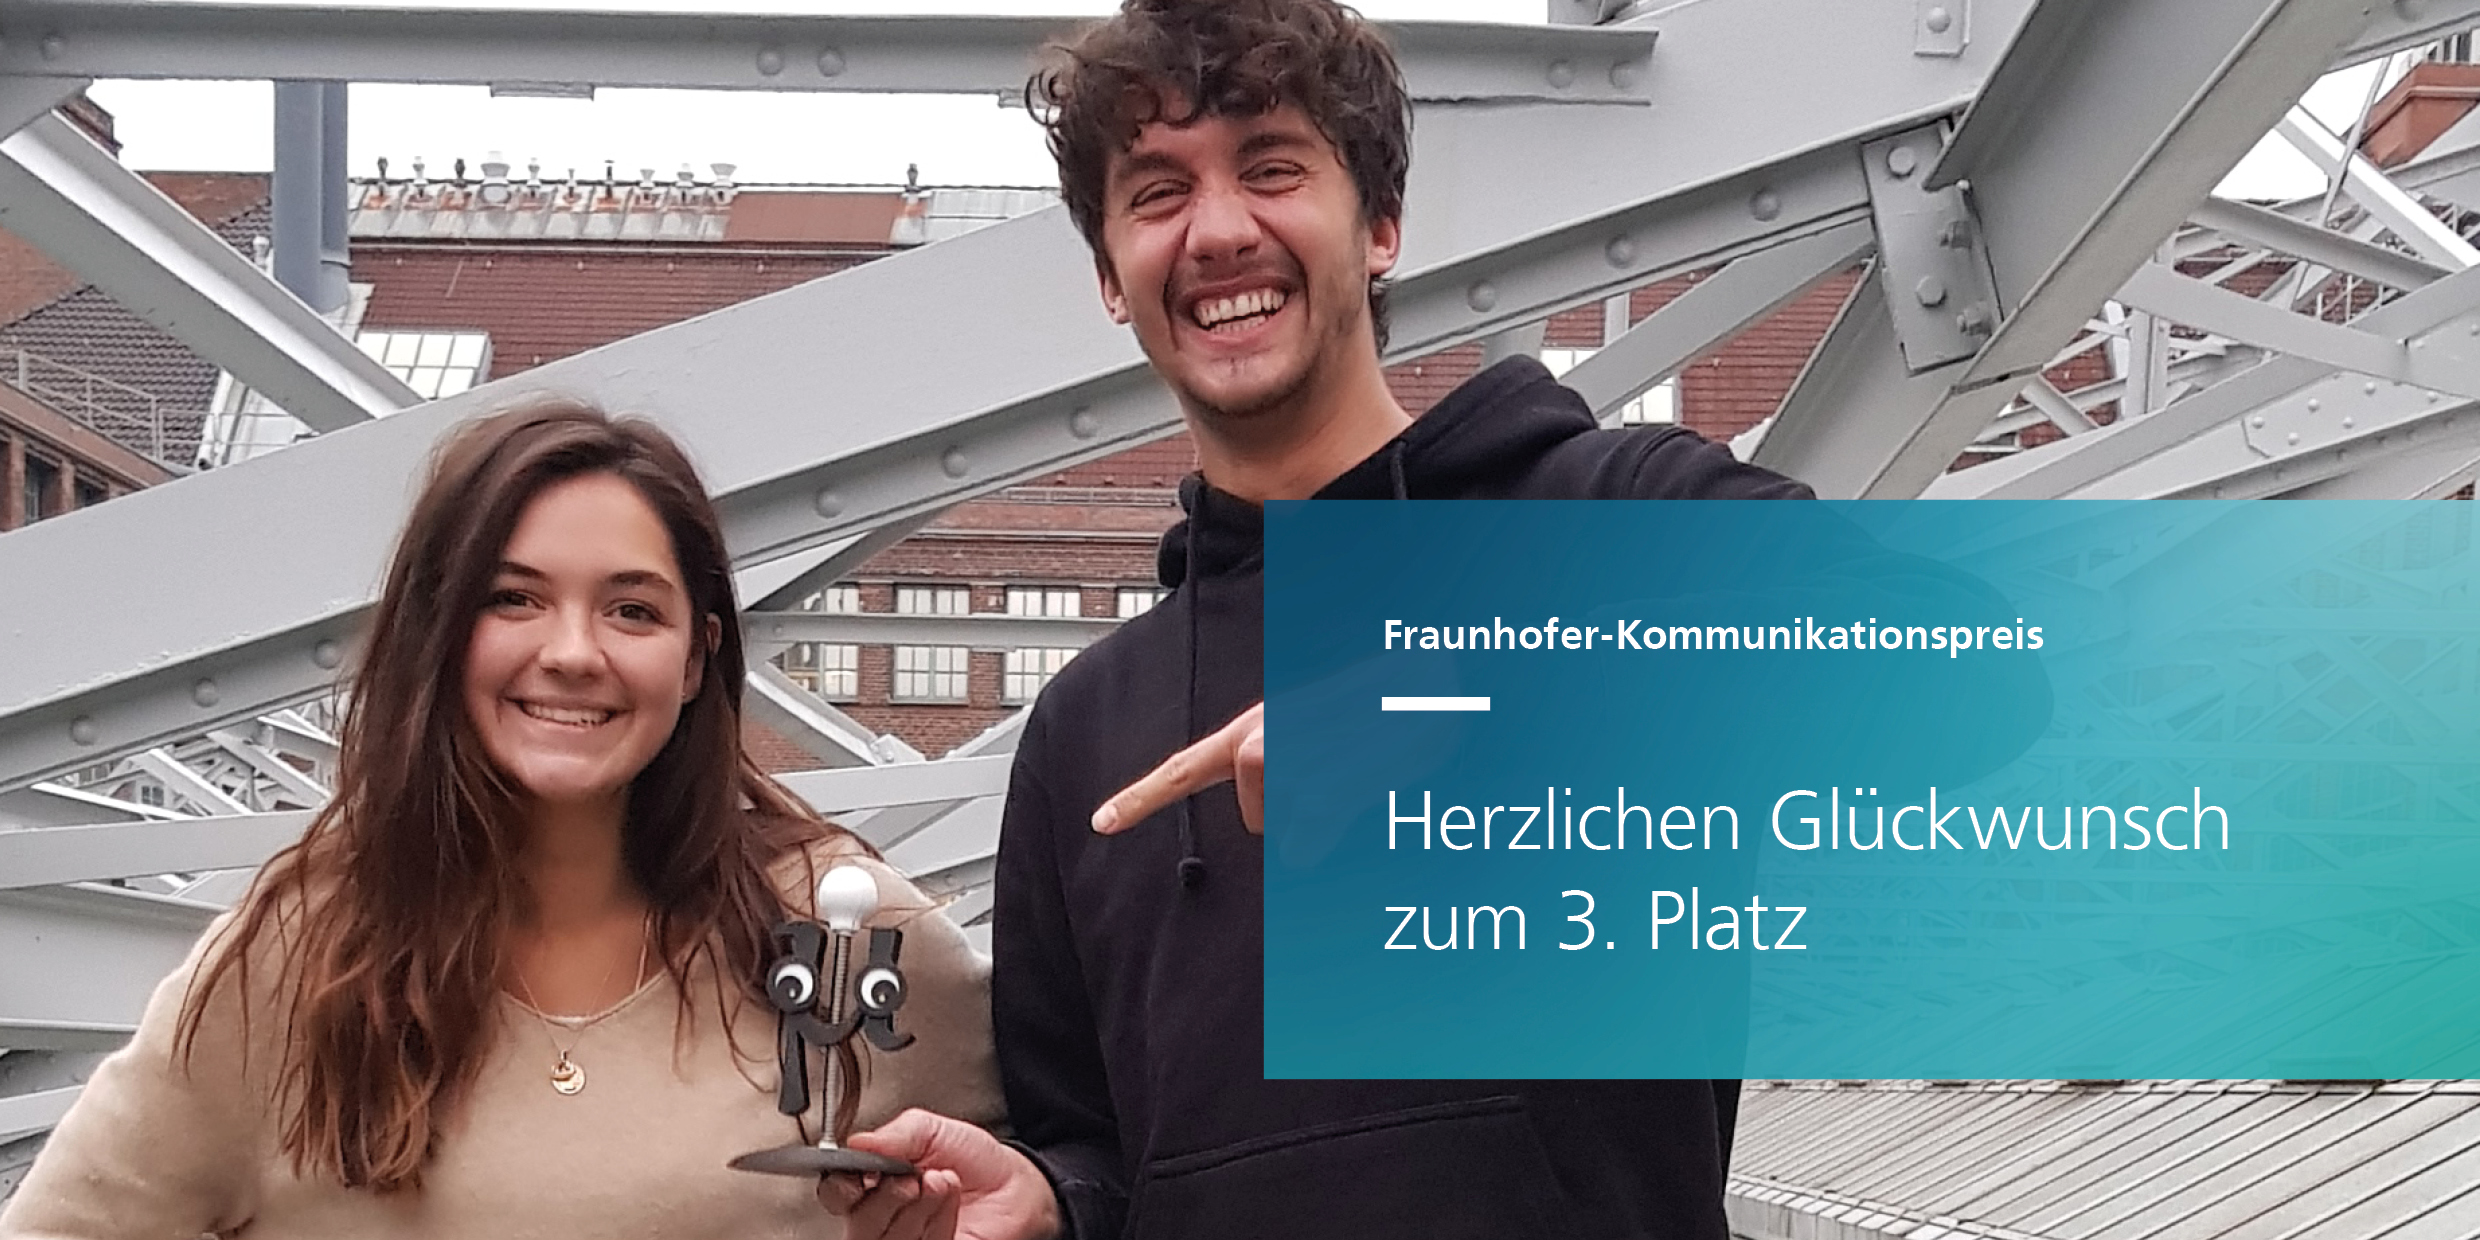 Image - Studierende des Fraunhofer IZM pitchen erfolgreich beim Fraunhofer-Kommunikationspreis